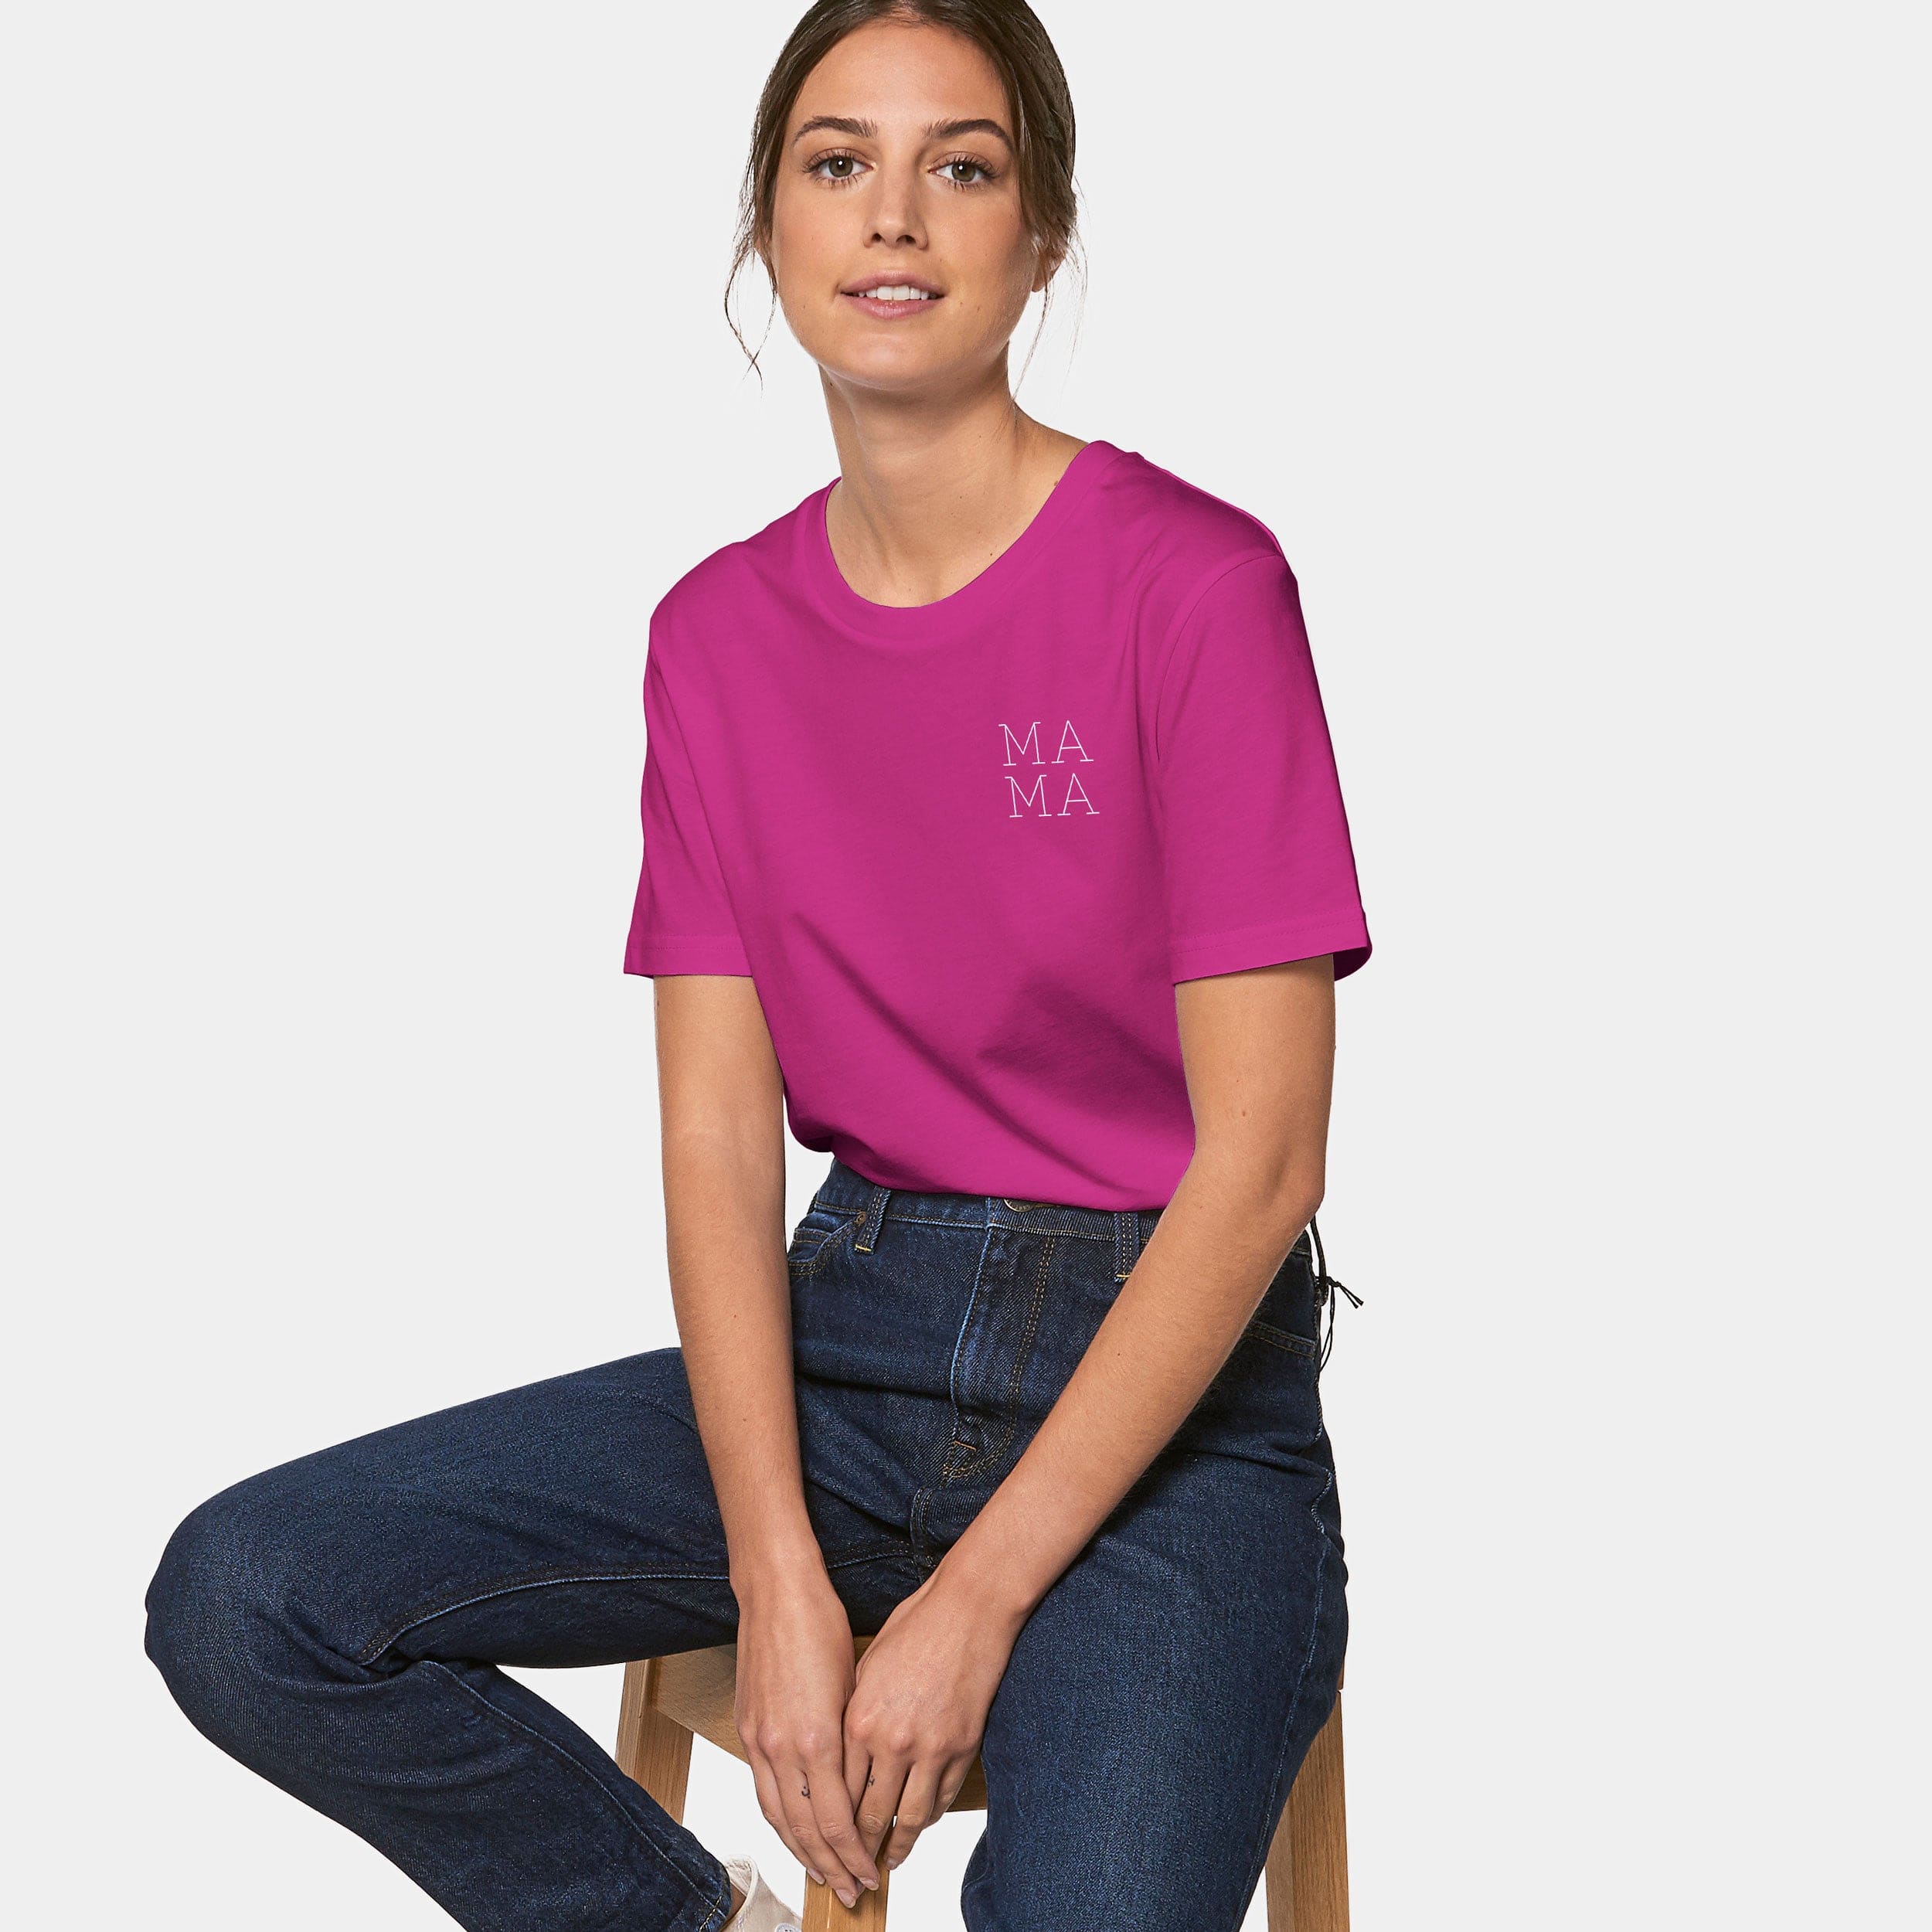 HEITER & LÄSSIG T-Shirt "Mama" - aus nachhaltiger und fairer Produktion